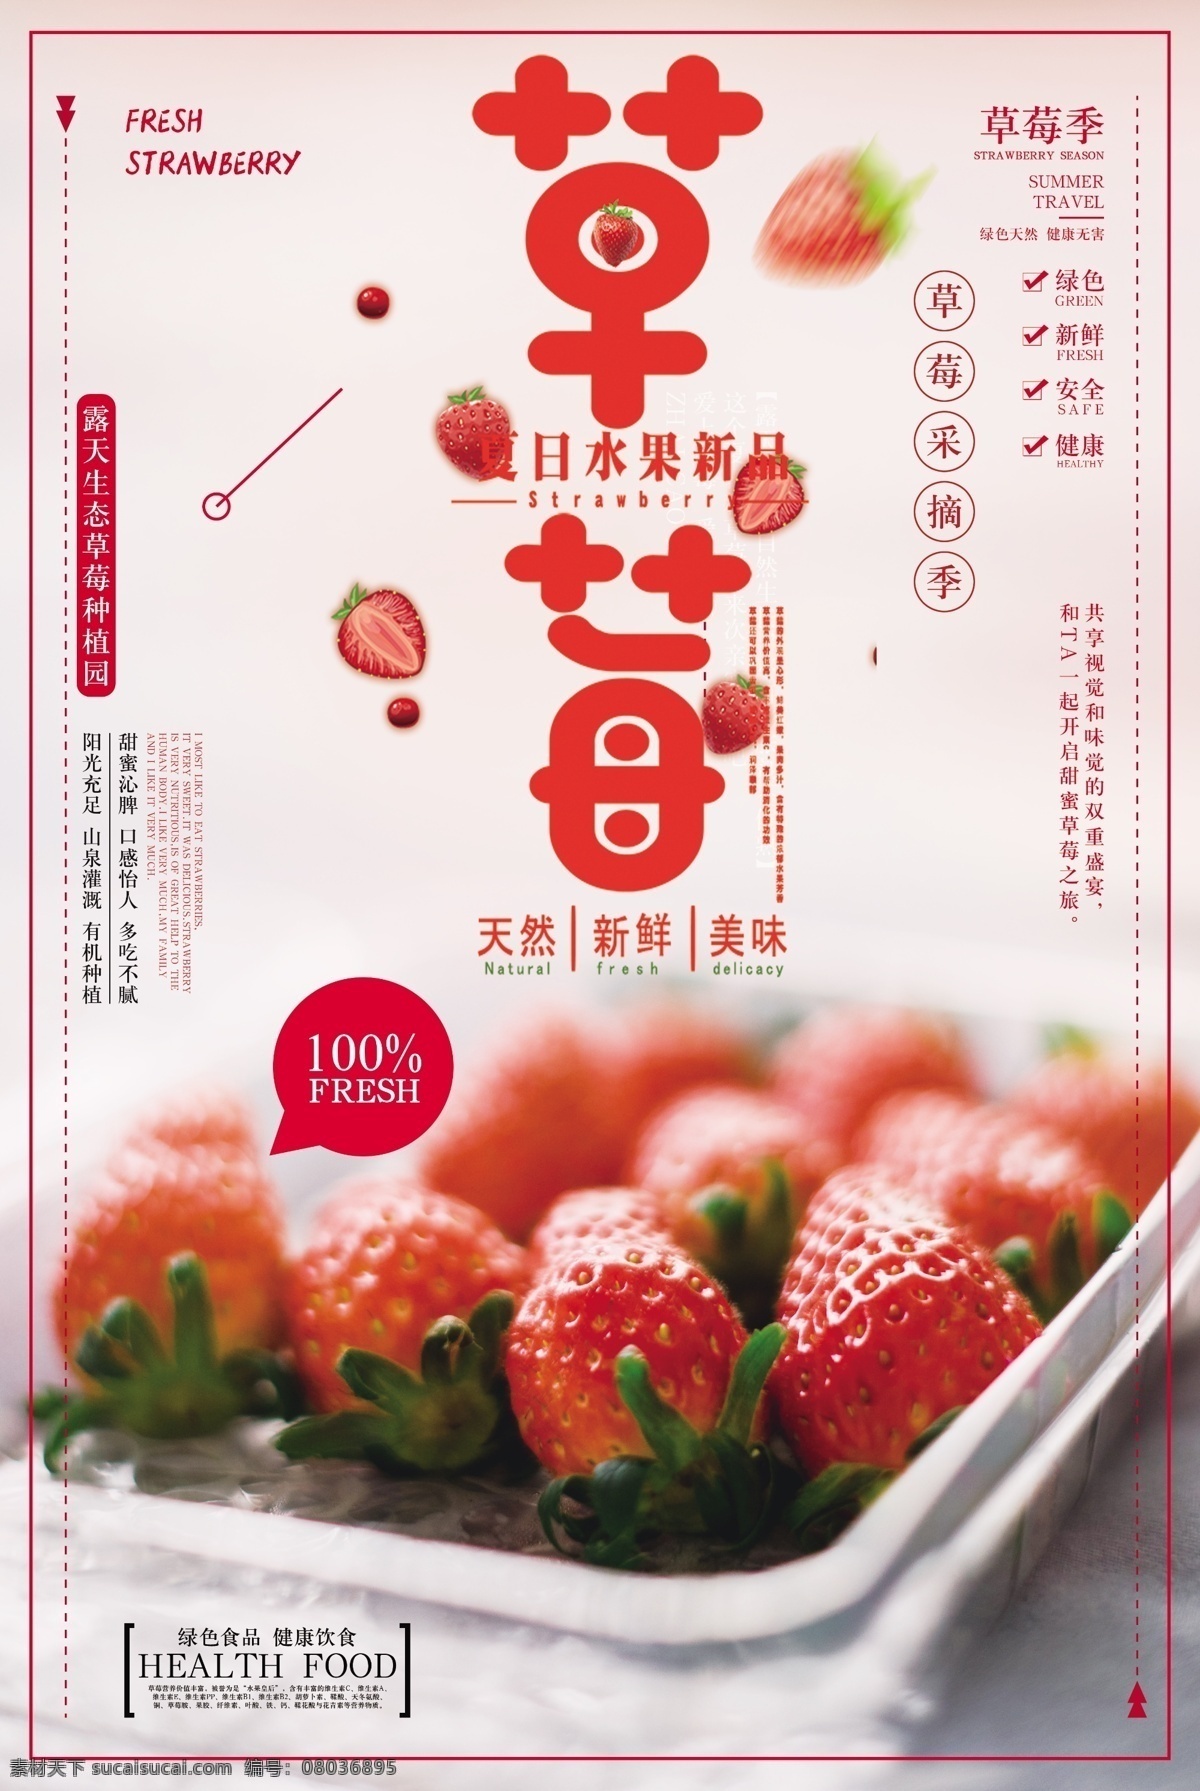 粉色 草莓 新鲜 水果 促销 免费 模板 清新海报 水果海报 促销海报 宣传海报 简约海报 草莓海报 水果促销 新鲜水果 水果模板 新鲜草莓